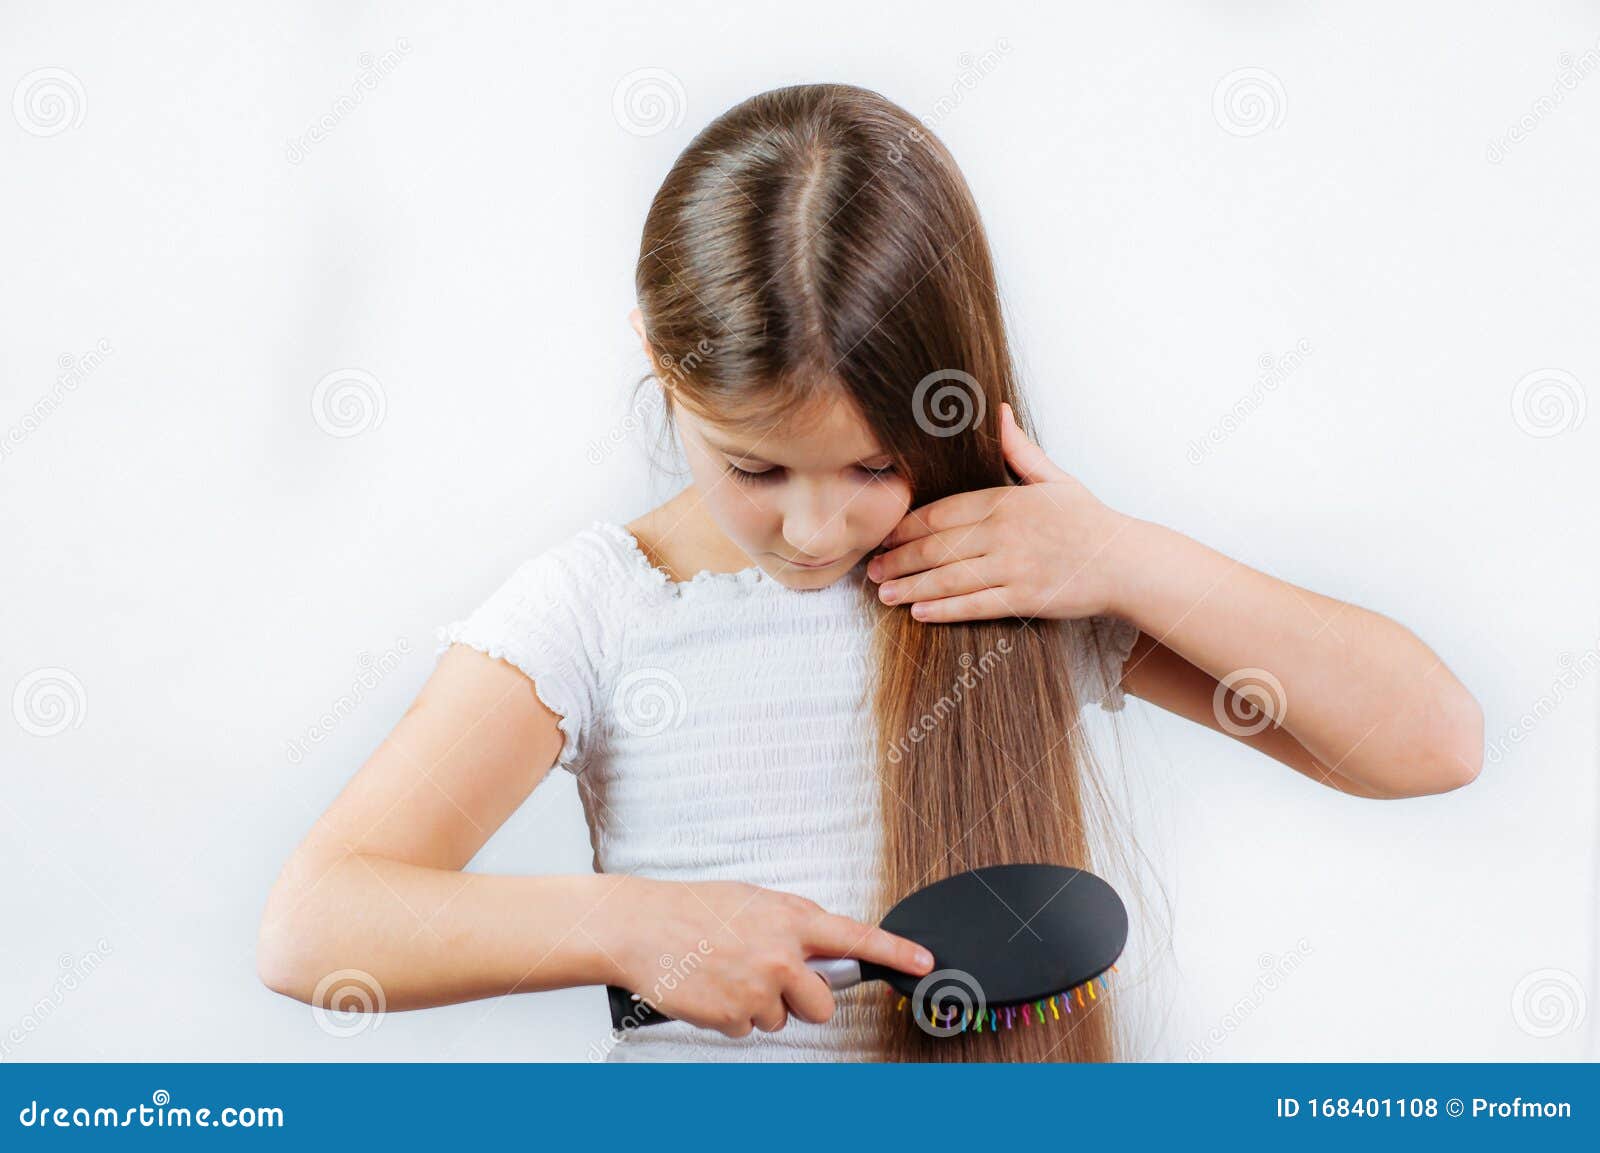 可爱的微笑小女孩梳梳头梳头 库存照片. 图片 包括有 表达式, 现有量, 理发, 发型, 人力, 长期 - 168401218